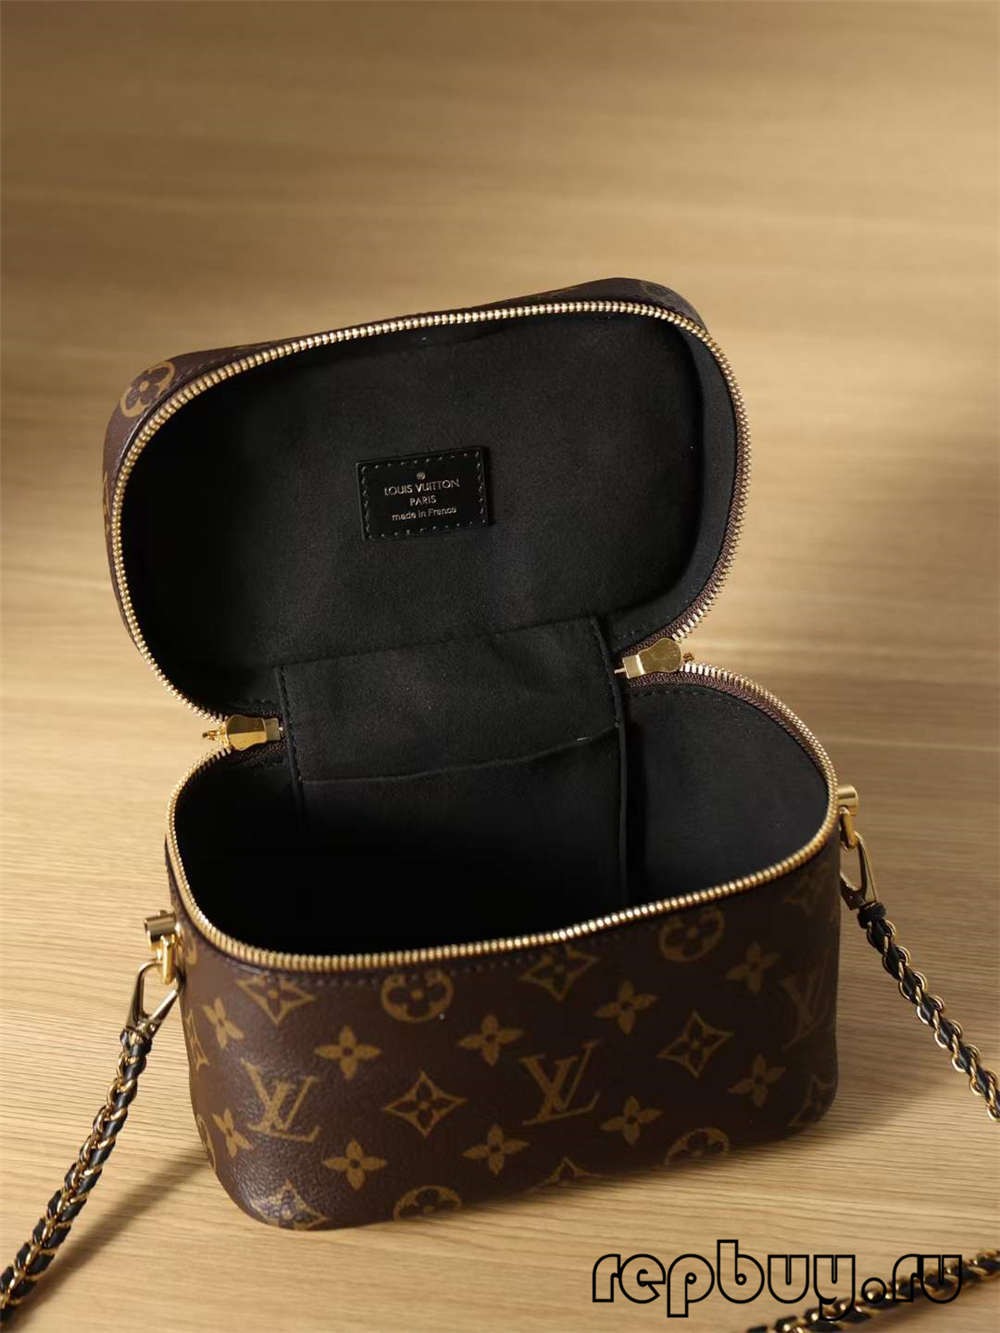 Louis Vuitton M45165 VANITY Small Top Replica Handbag-ի պատկերանշանը և փակման մանրամասները (2022 թ. թարմացվել է)-Լավագույն որակի կեղծ Louis Vuitton պայուսակների առցանց խանութ, Replica դիզայներական պայուսակ ru